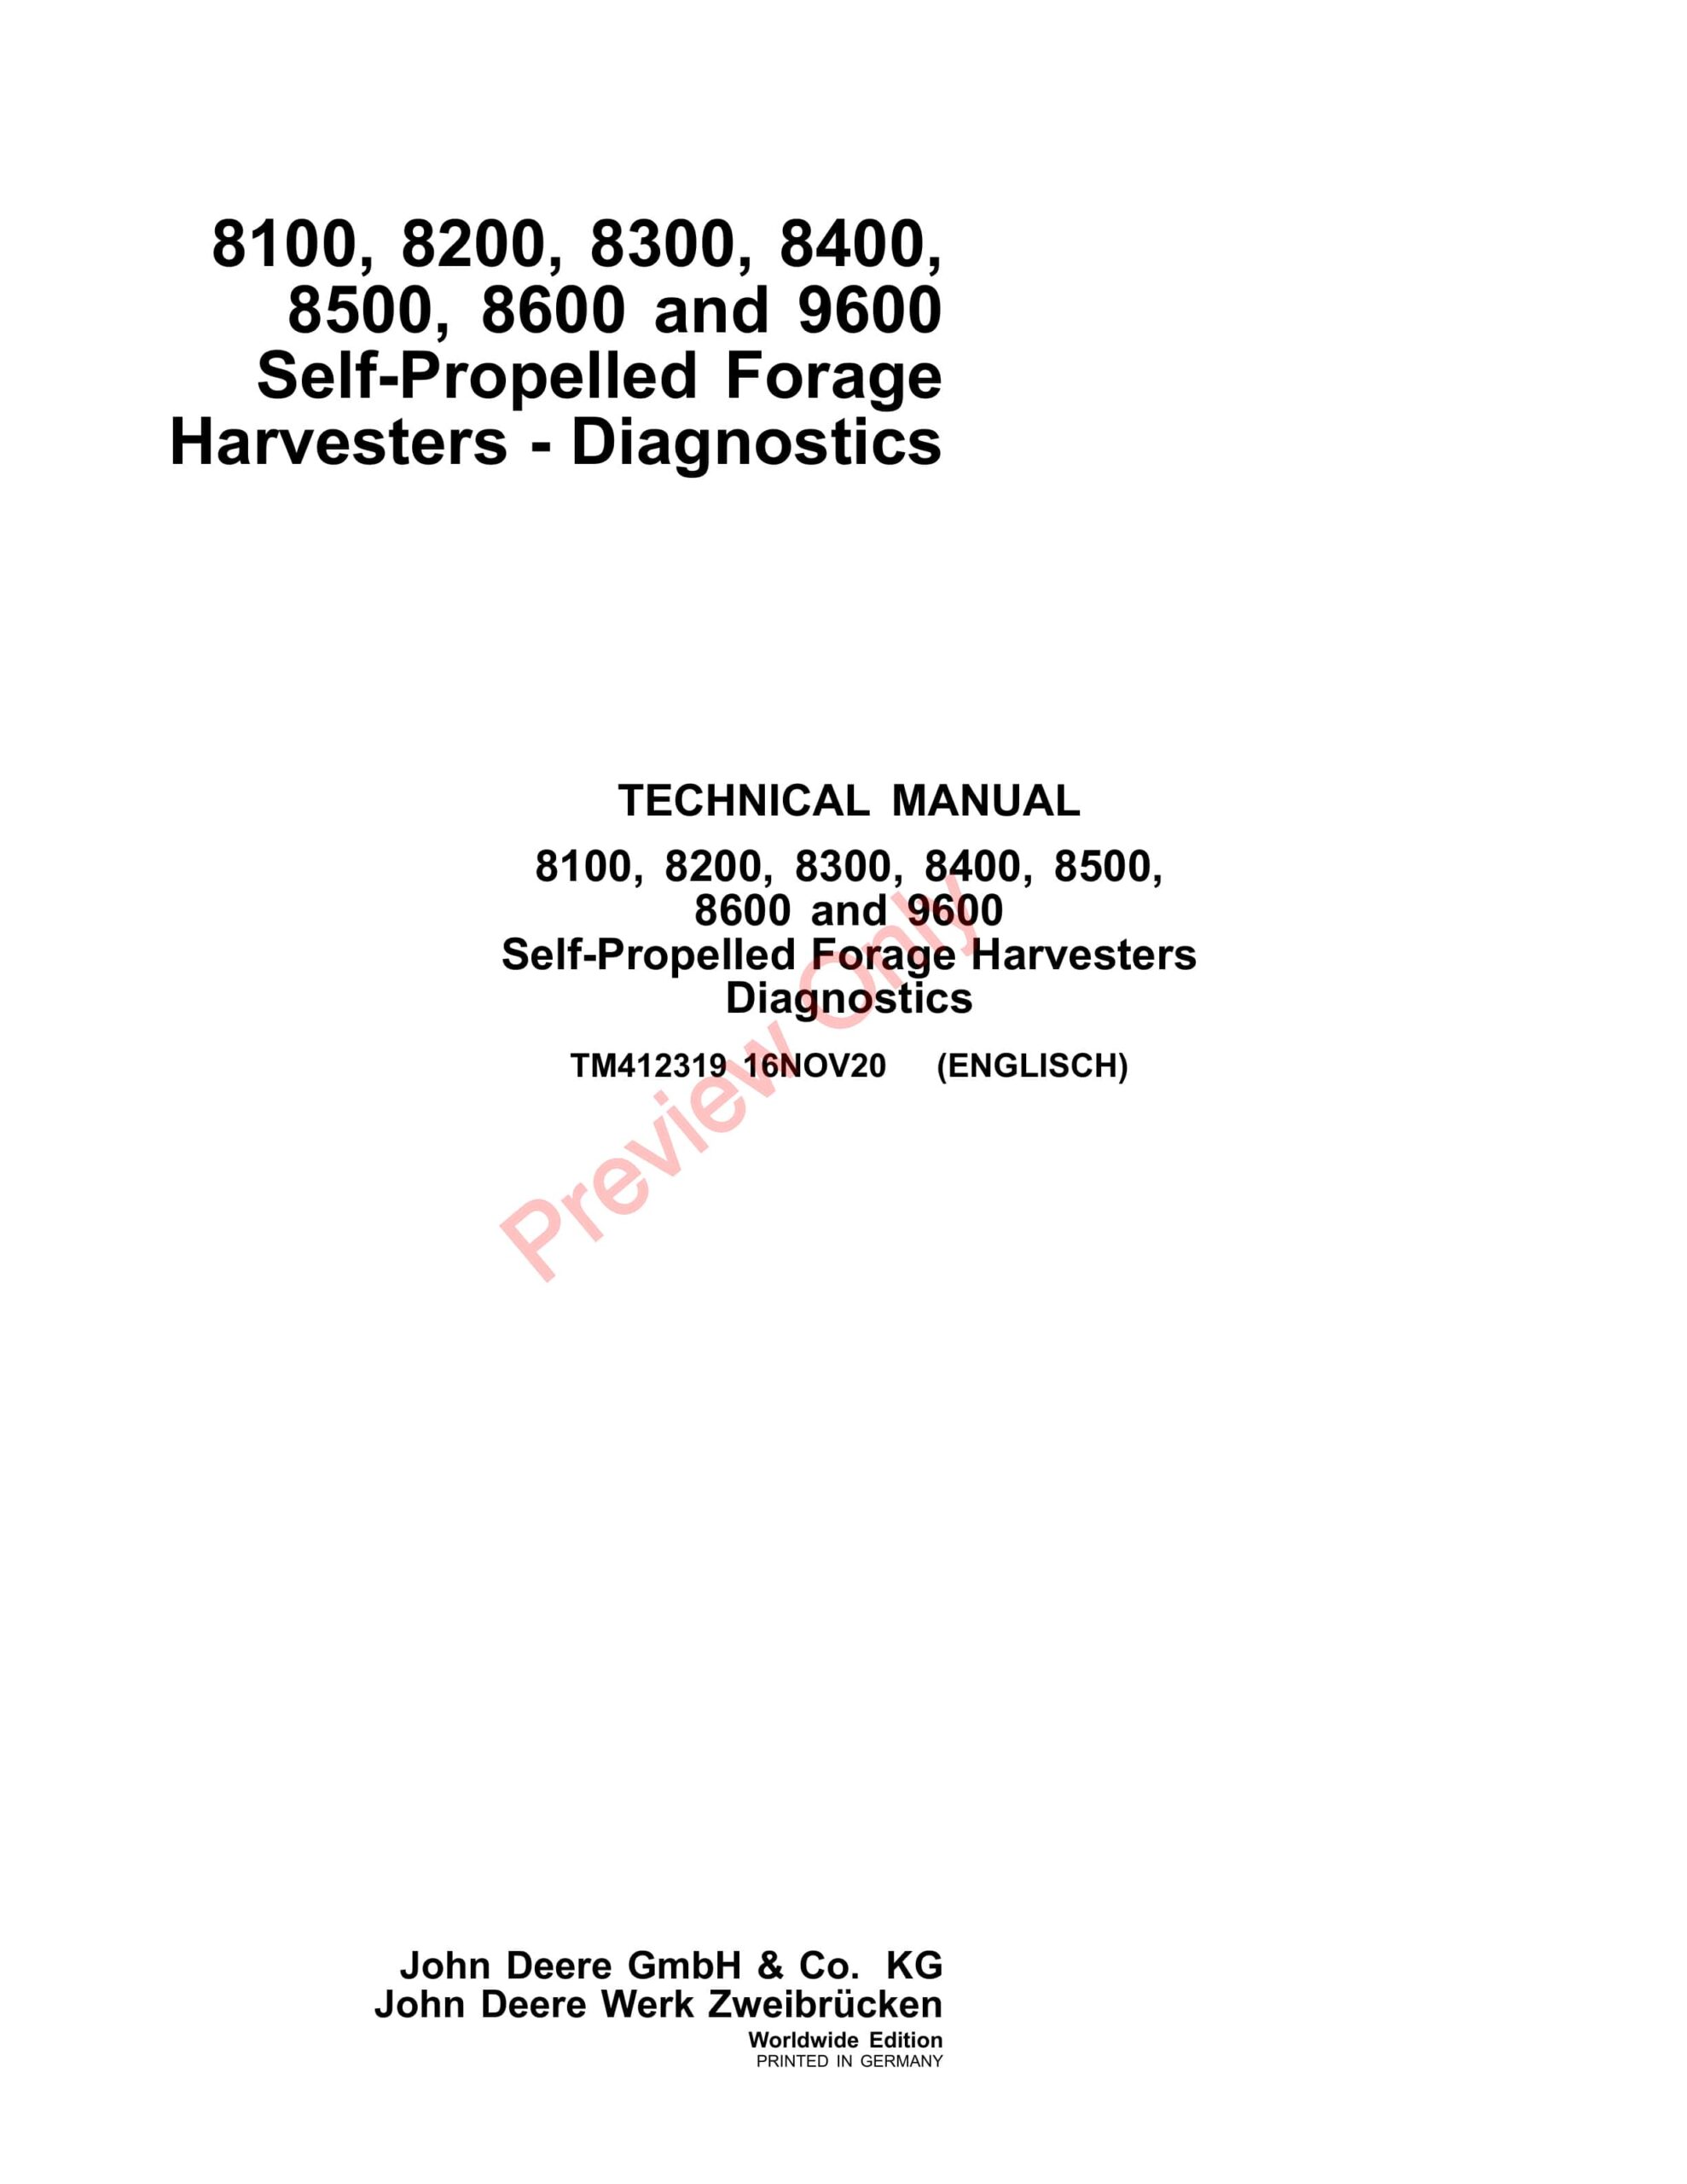 John Deere 8100, 8200, 8300, 8400, 8500, 8600 and 9600 Self Technical Manual TM412319 16NOV20-1